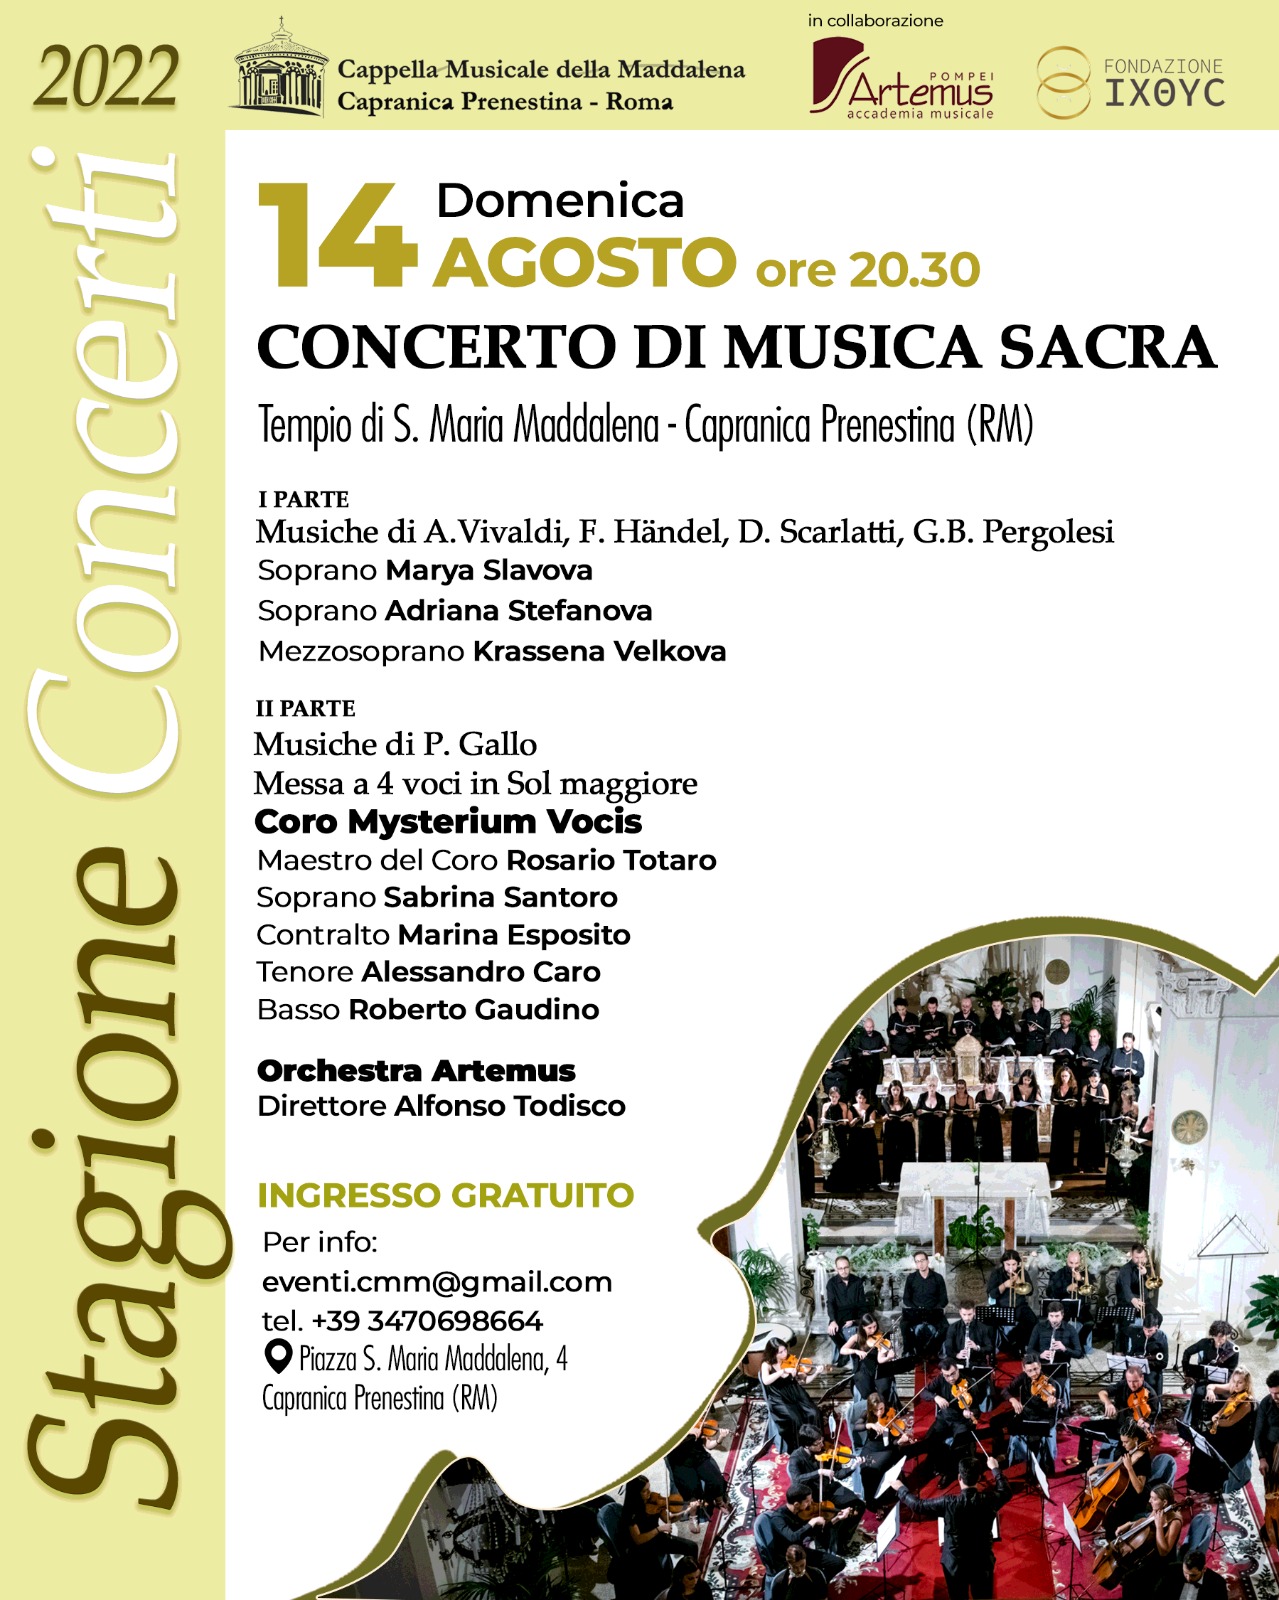 https://www.agenziaeventi.org/immagini_news/3115/capranica-prenestina-domenica-14-agosto-concerto-di-musica-sacra-3115.jpg